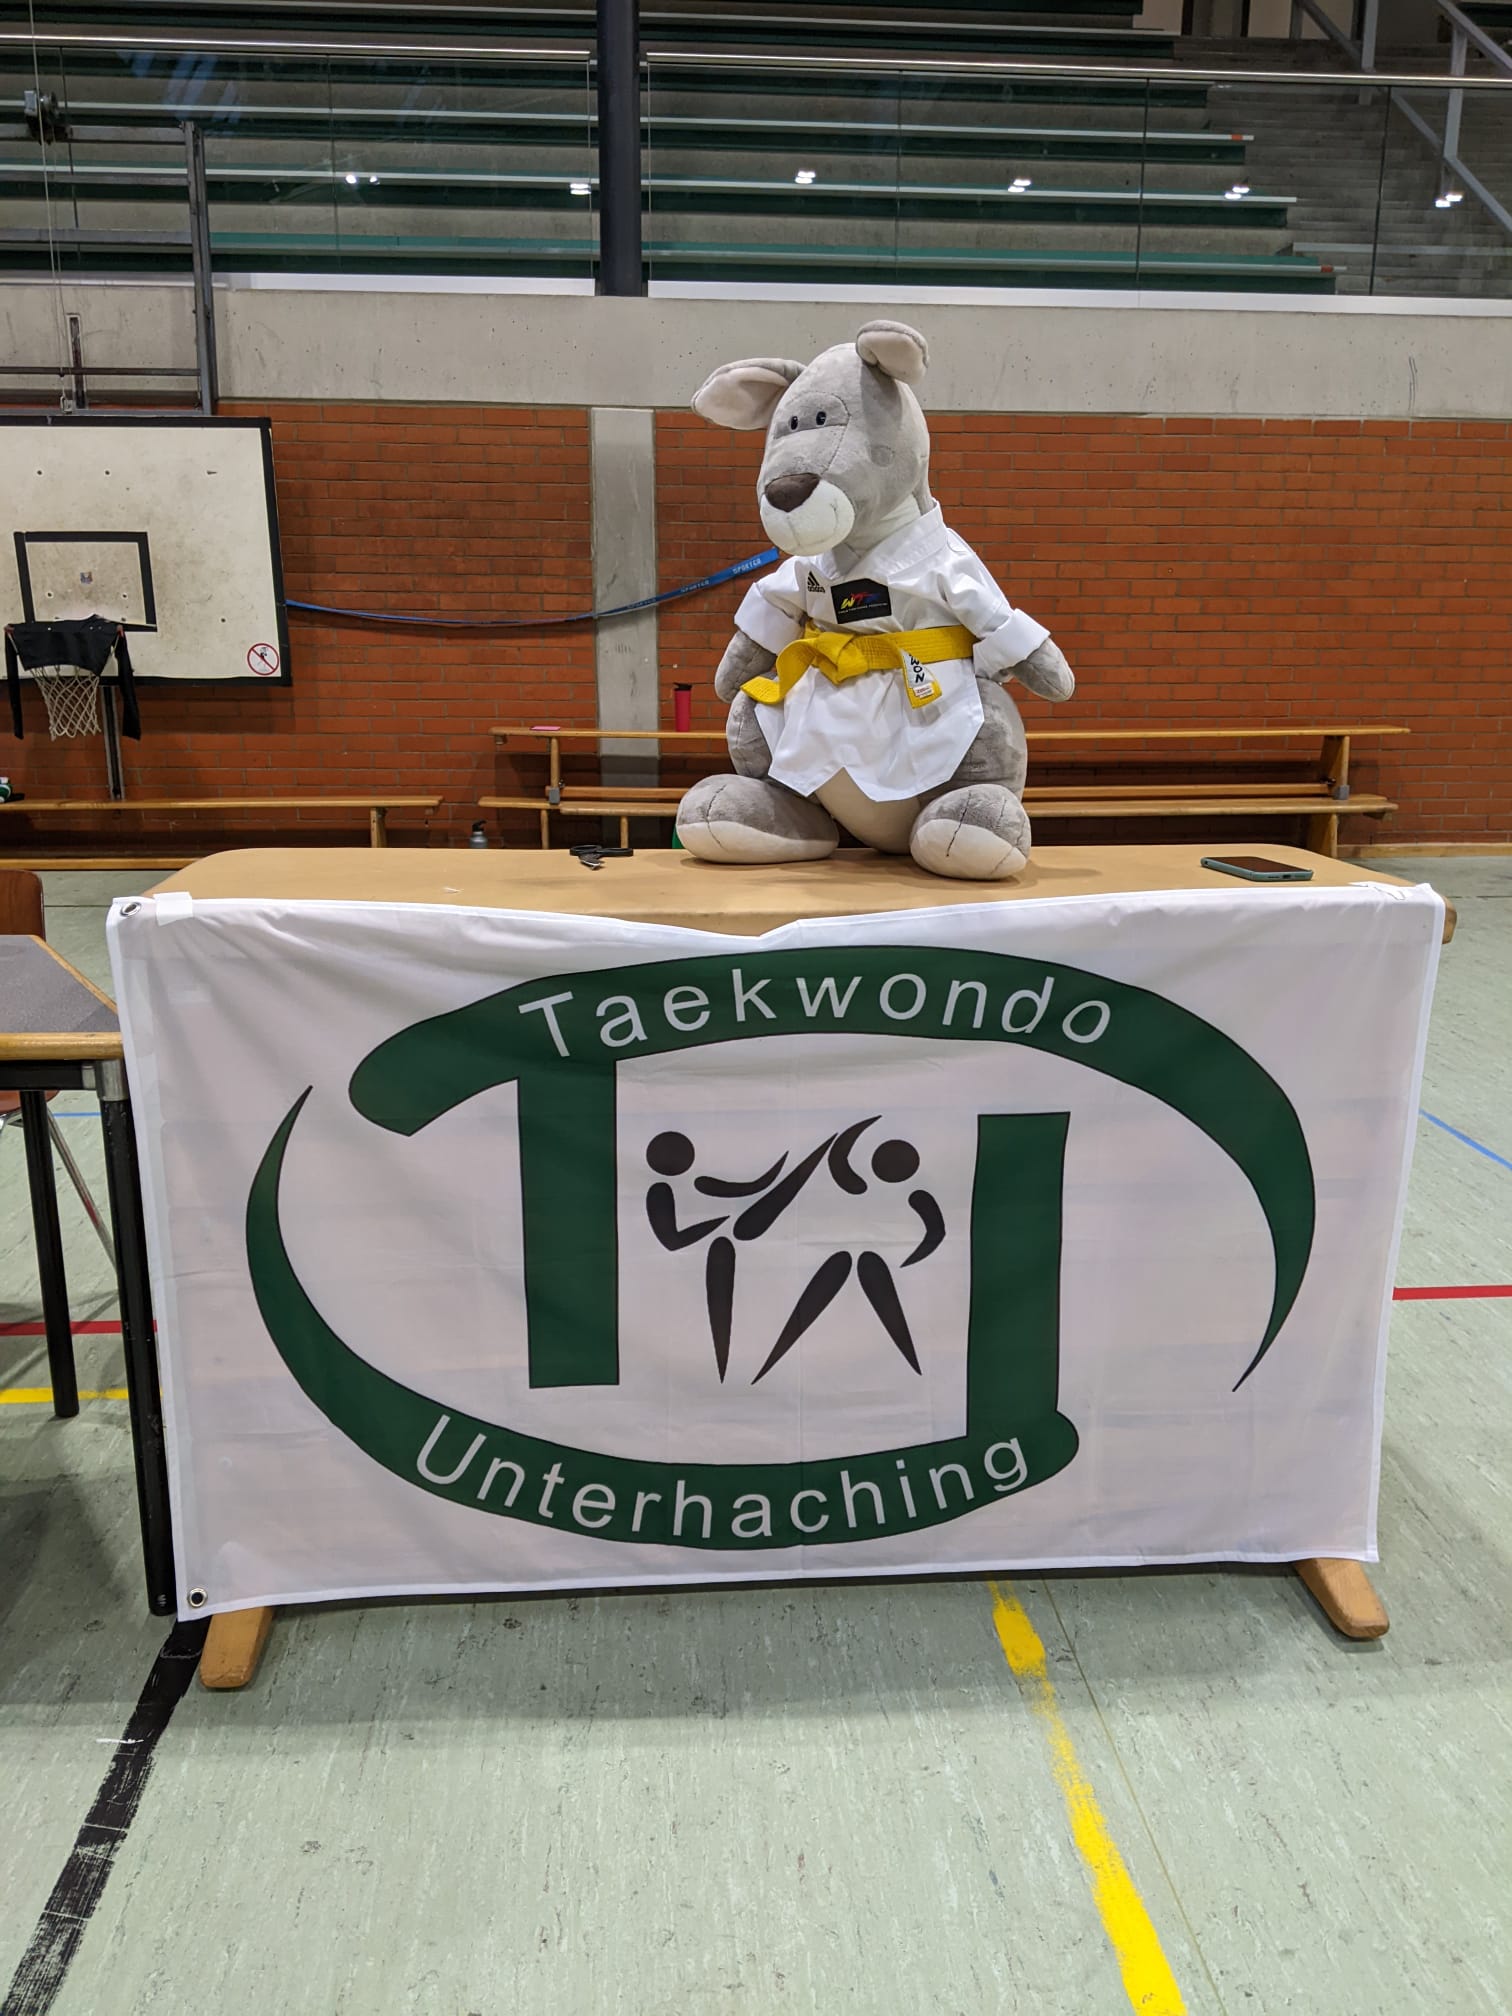 Taekwondo: Kup Prüfung Herbst 23